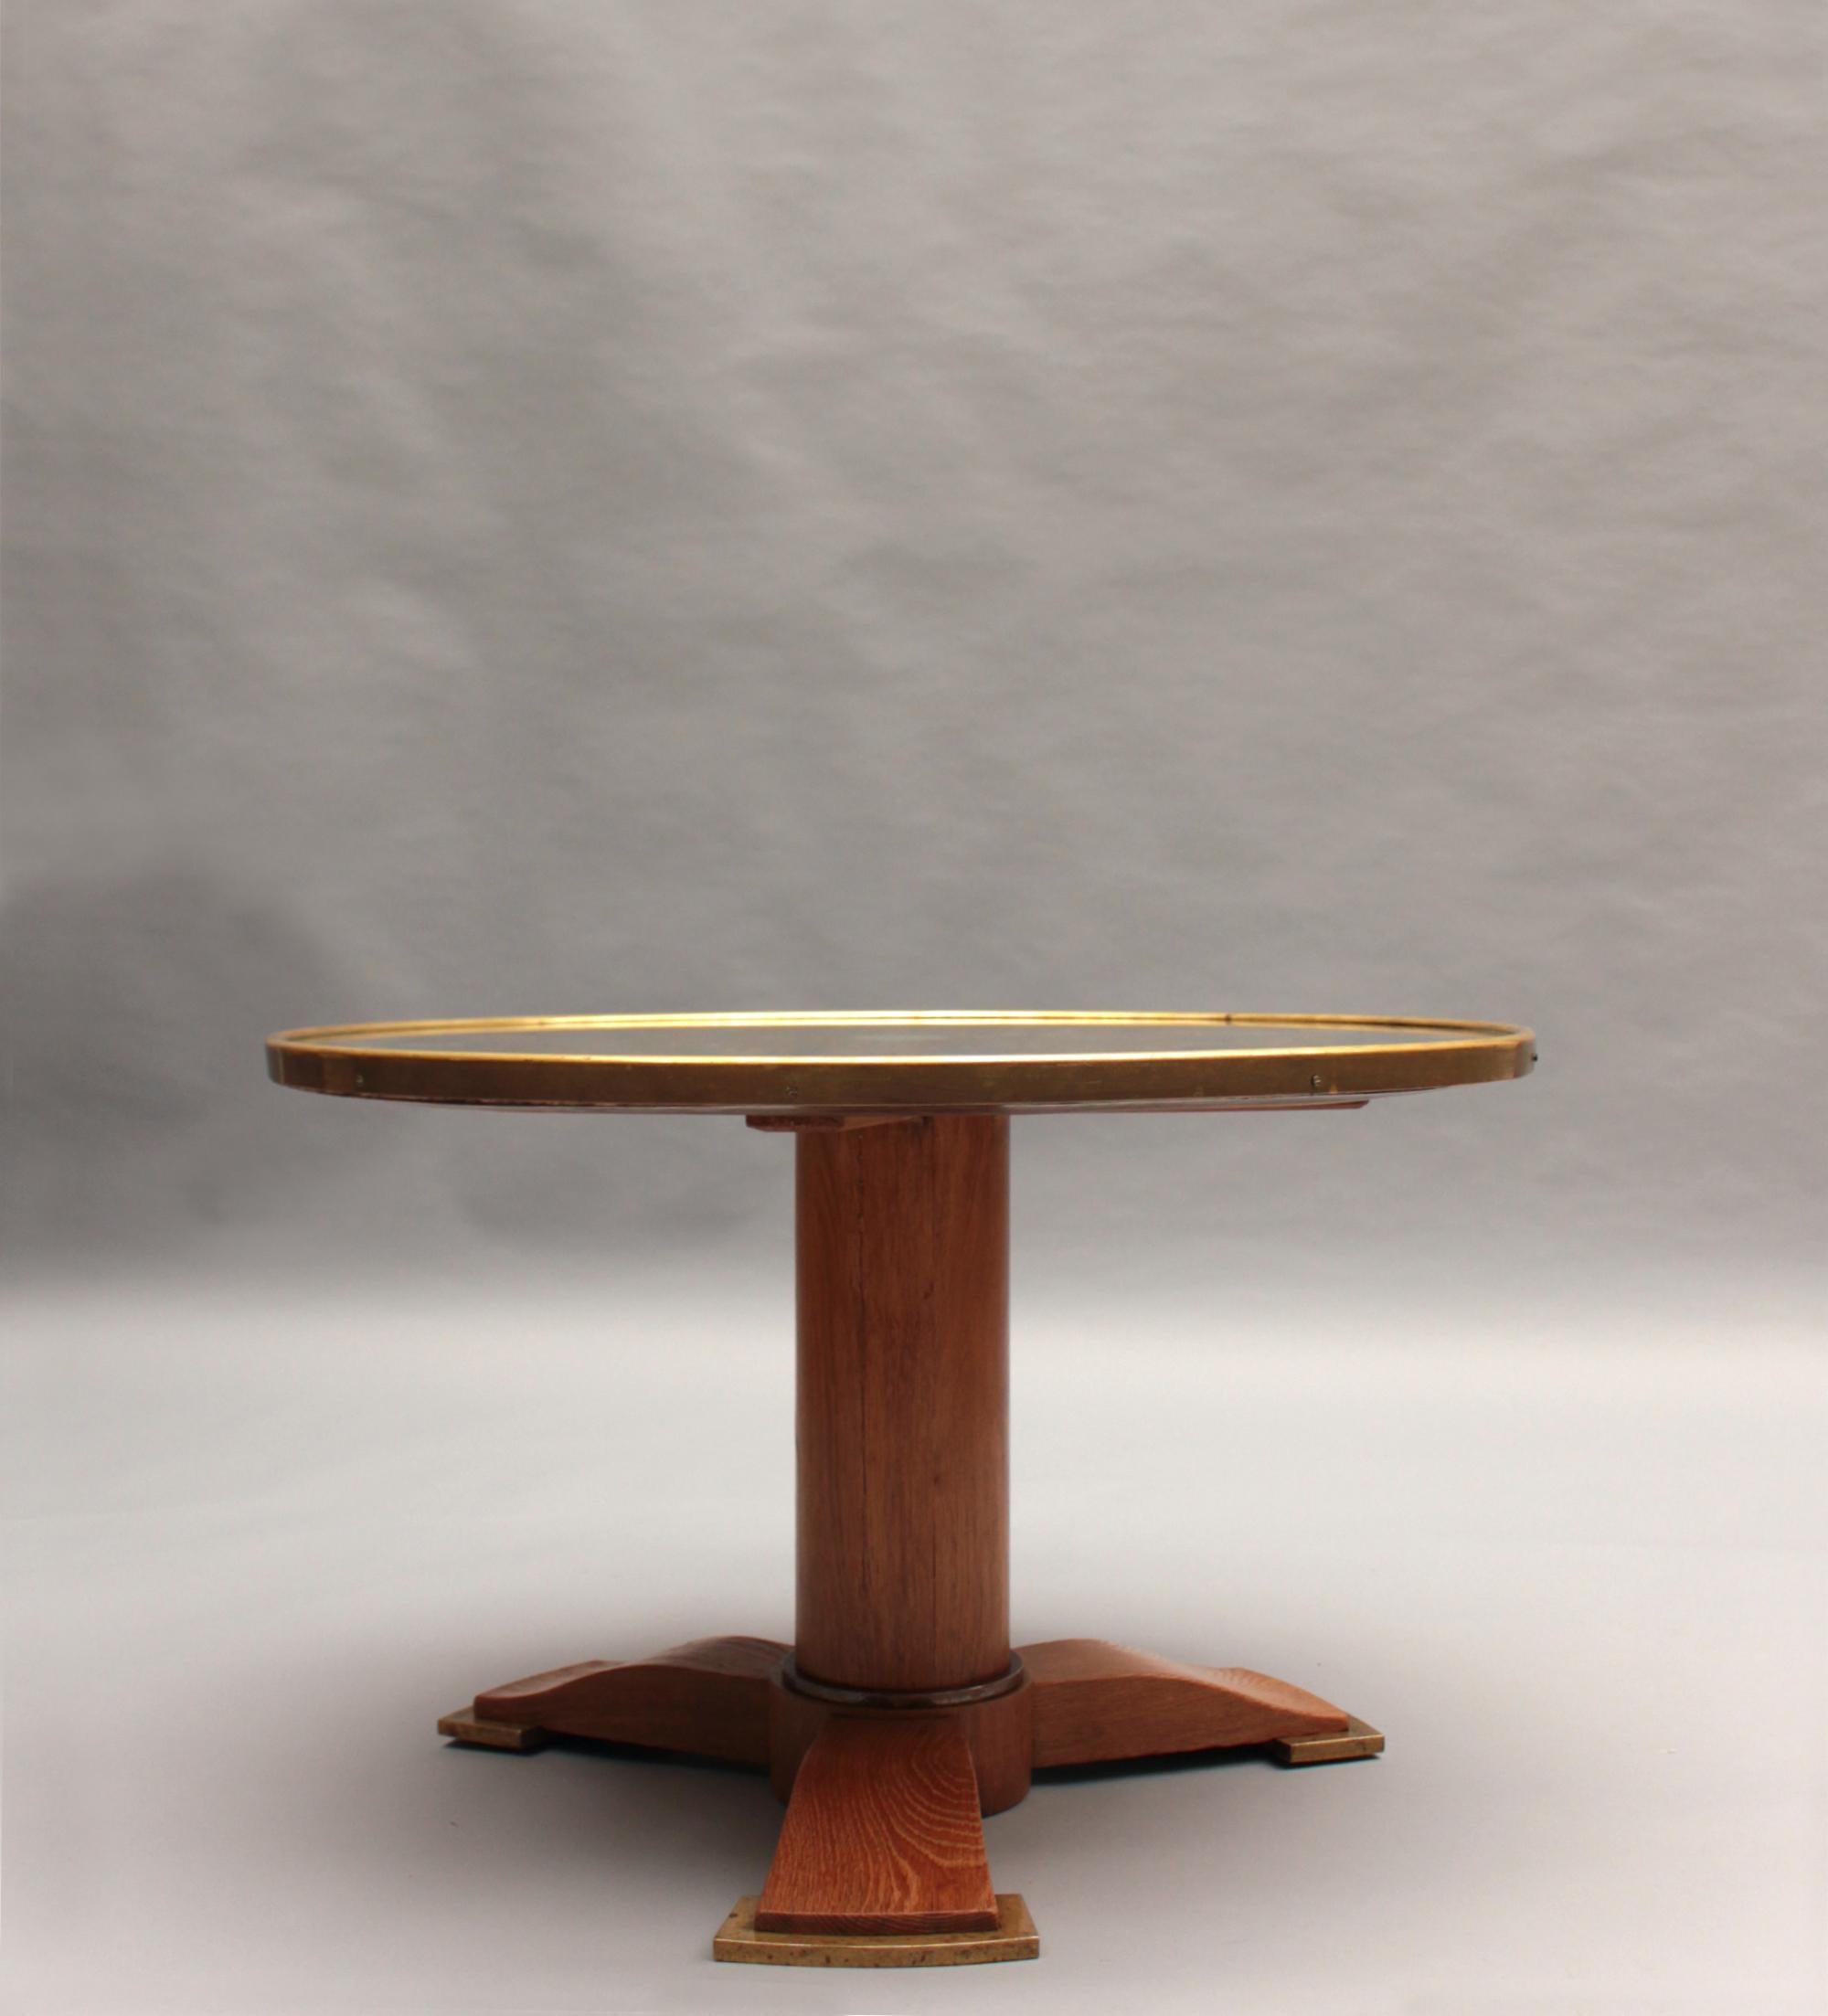 Jules Leleu (1883-1961) - Feiner französischer Couchtisch im Art Déco-Stil mit einer runden, eglomisierten Spiegelplatte, die von einem Bronzering umrahmt ist, auf einem zylindrischen Dreibein-Sockel aus Eiche mit drei leicht geschwungenen Beinen